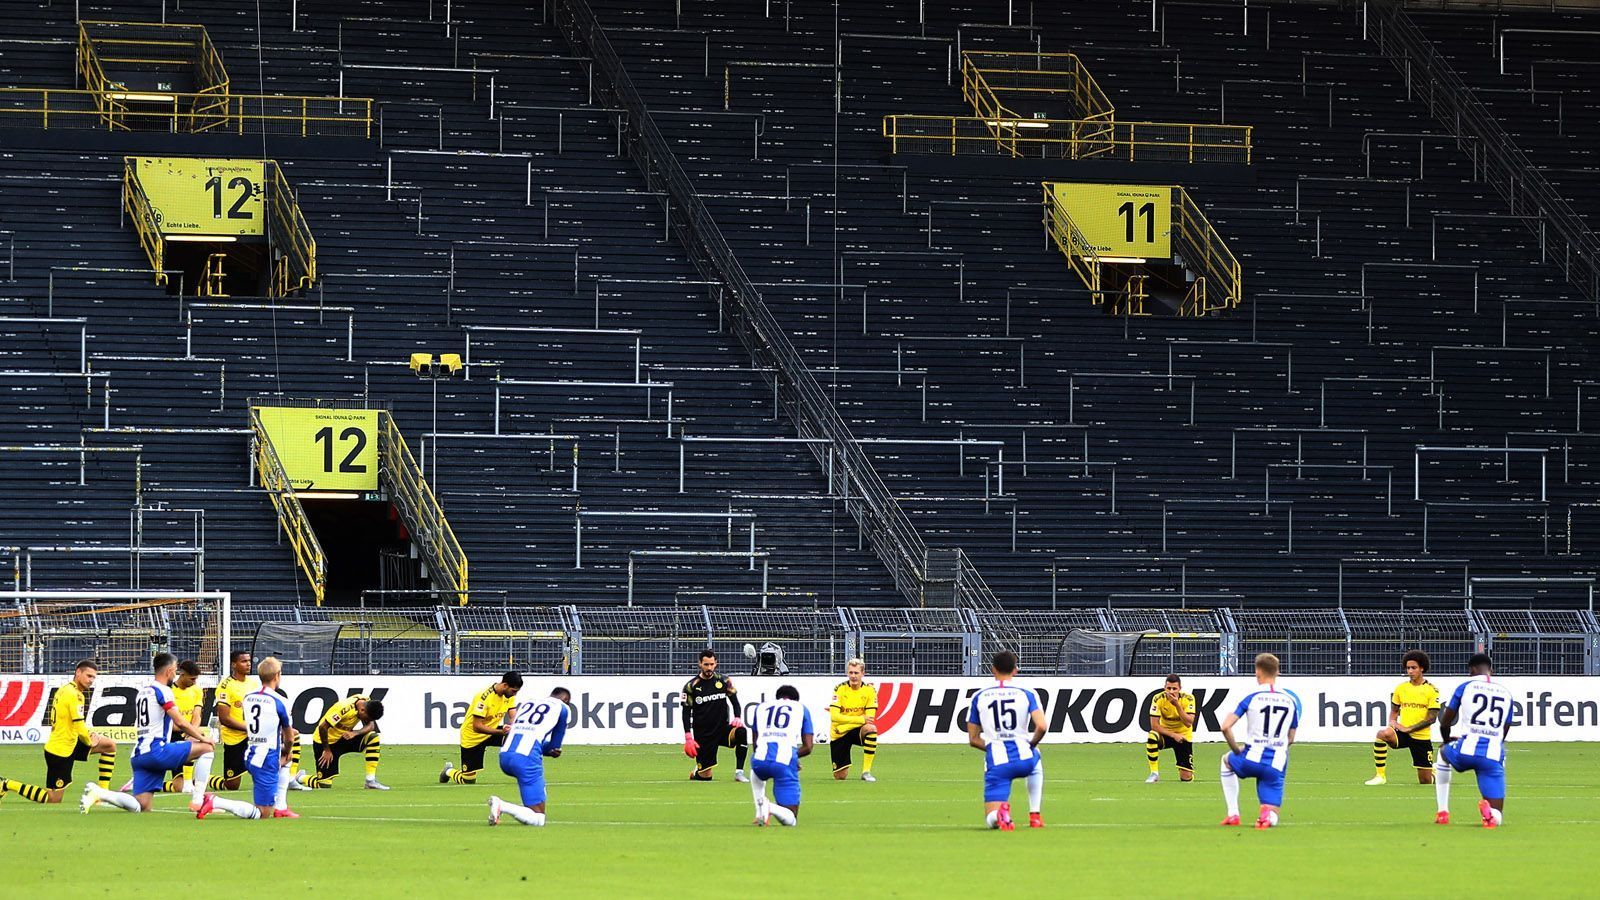 
                <strong>Borussia Dortmund vs. Hertha BSC</strong><br>
                Viele andere Bundesligisten zeigen dem Rassismus ebenfalls die Rote Karte. Vor dem Bundesligaspiel zwischen dem BVB und Hertha BSC sanken beide Teams am Mittelkreis auf die Knie. Ähnliche Bilder gibt es aus vielen weiteren Stadien der 1. und 2. Liga. 
              